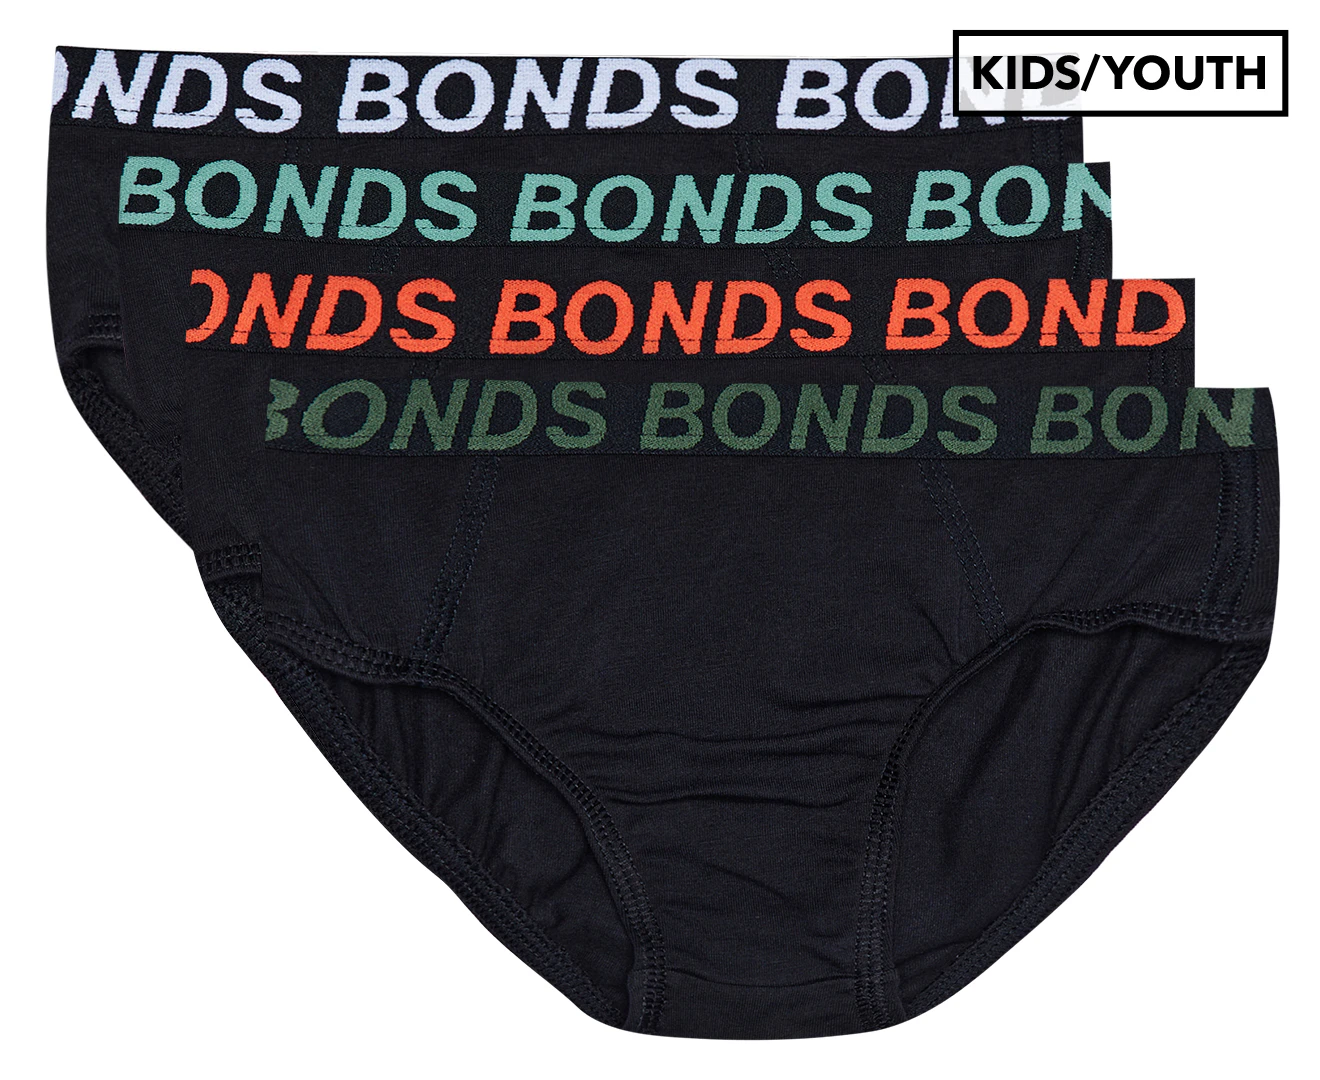 Bonds Boys' Sport Trunks 3-Pack - Black/Multi